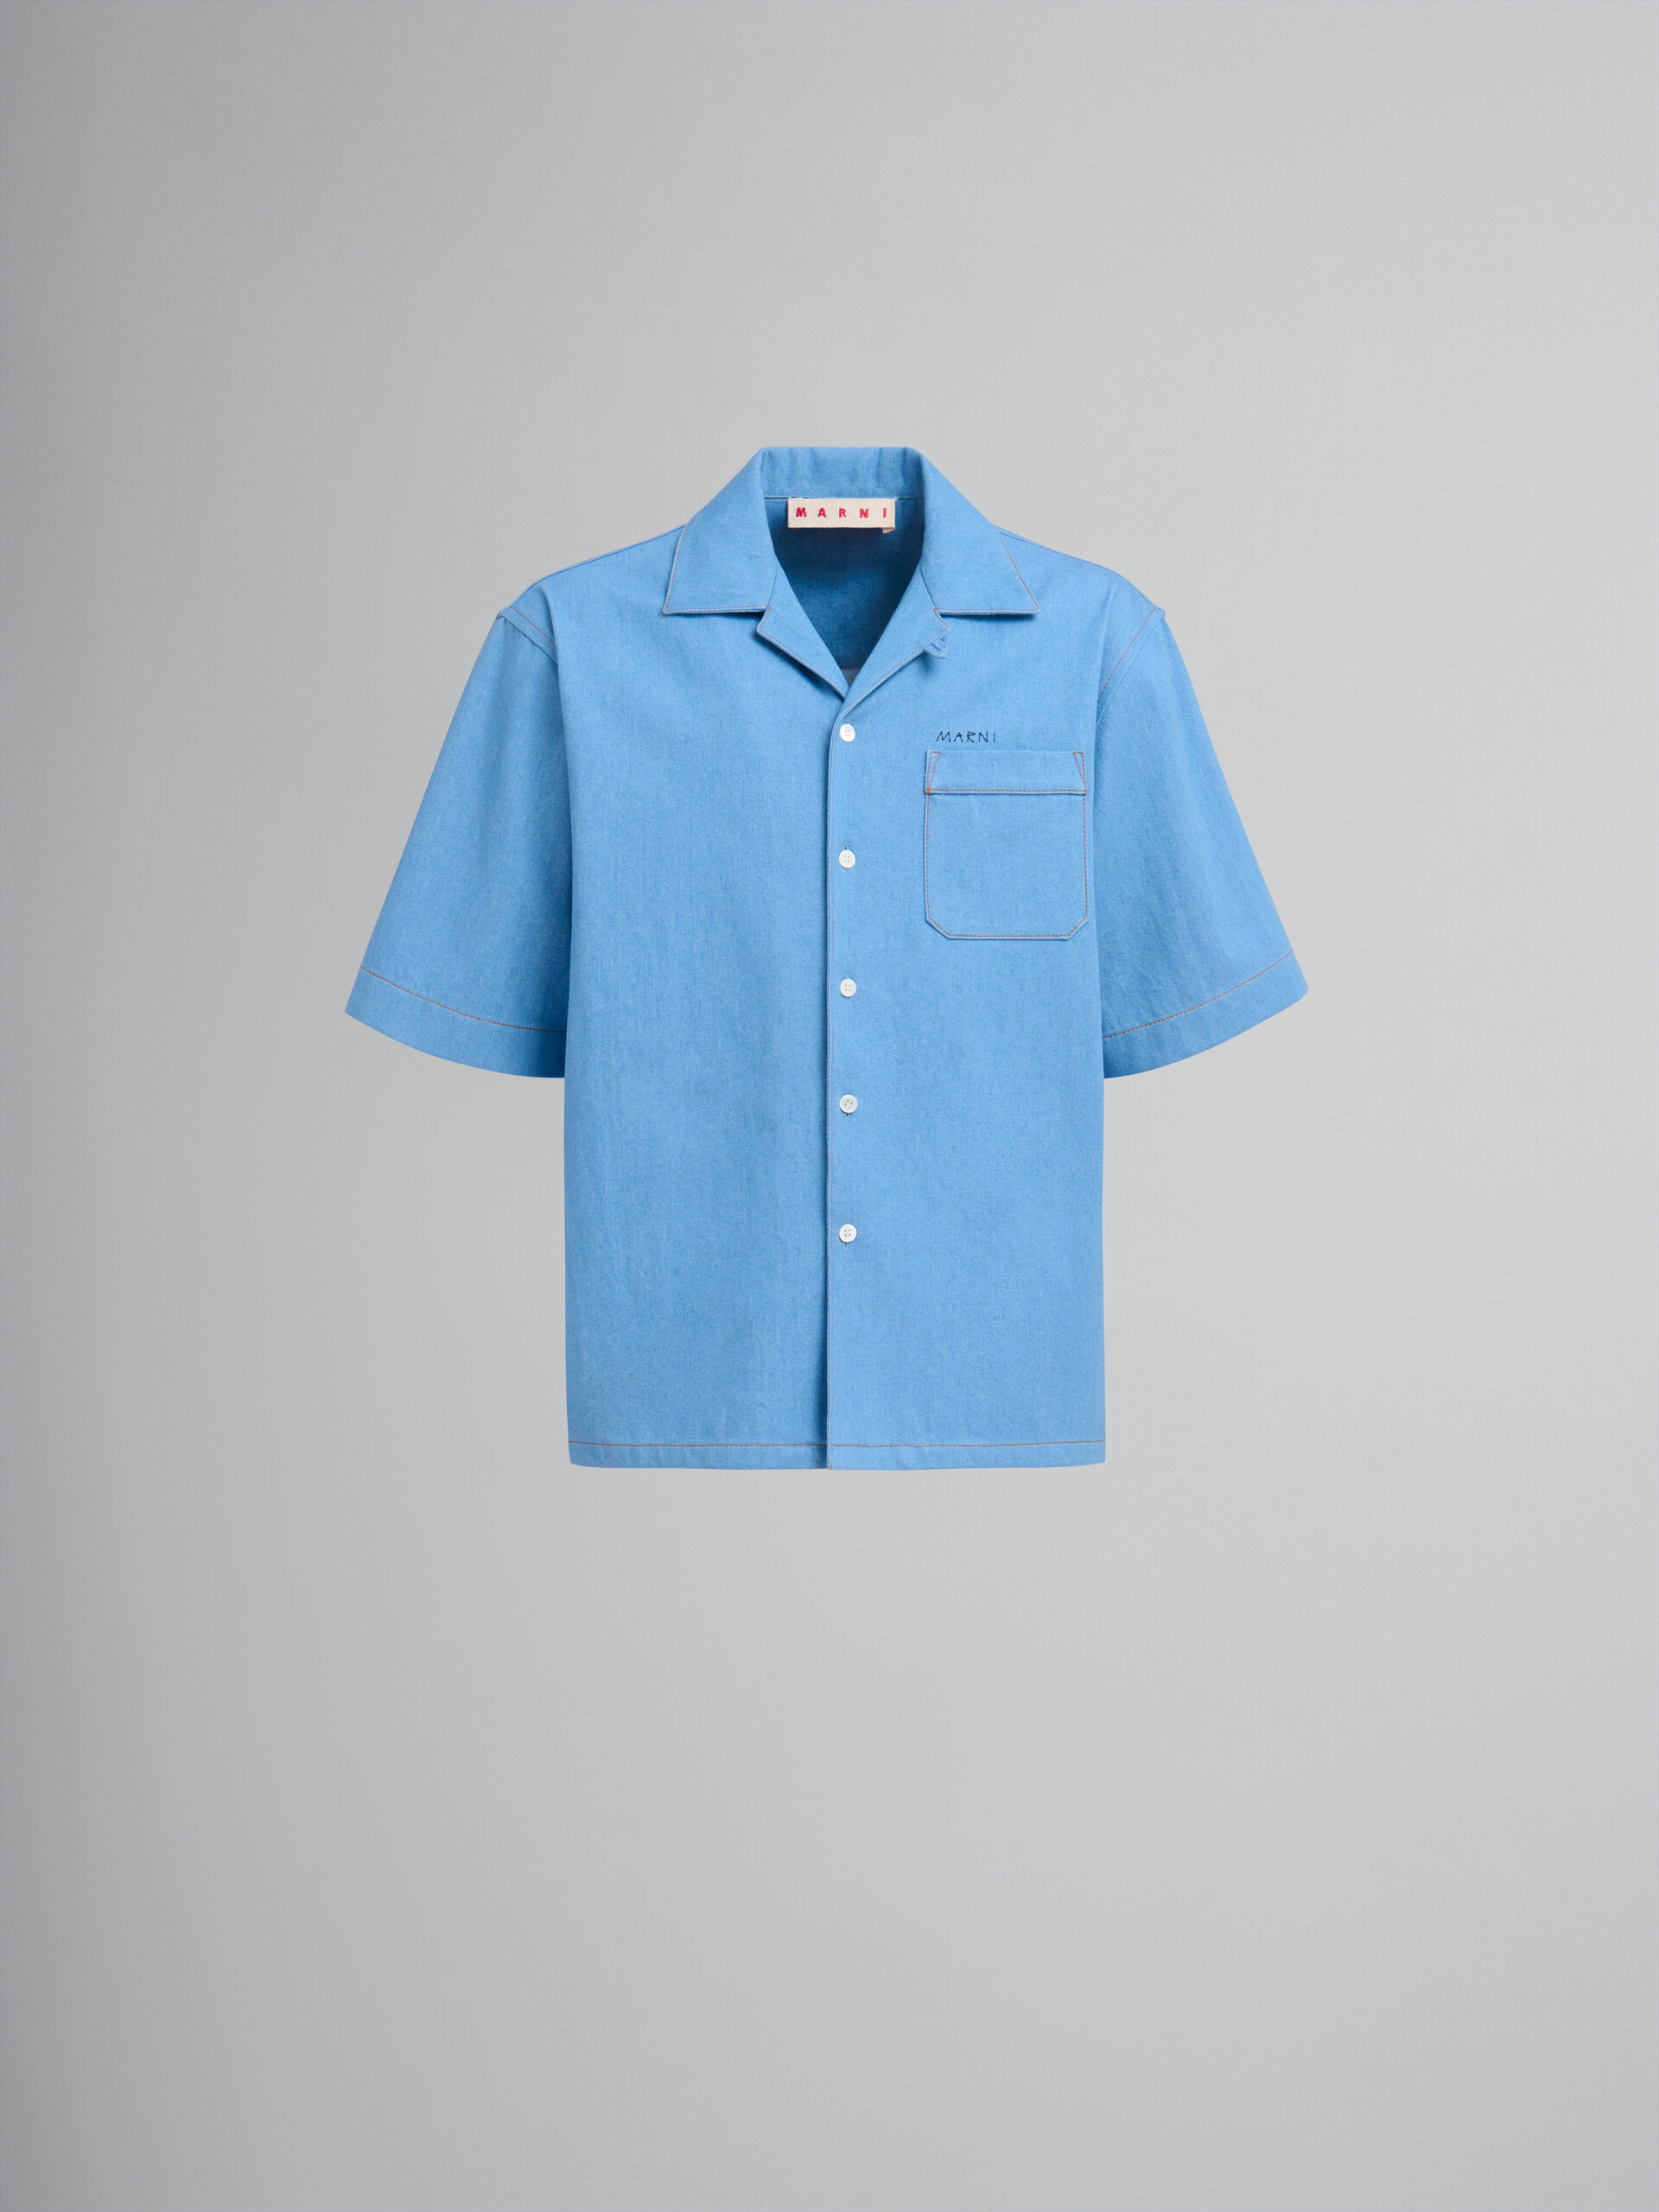 Camicia bowling in denim blu con logo Marni ricamato - Camicie - Image 1